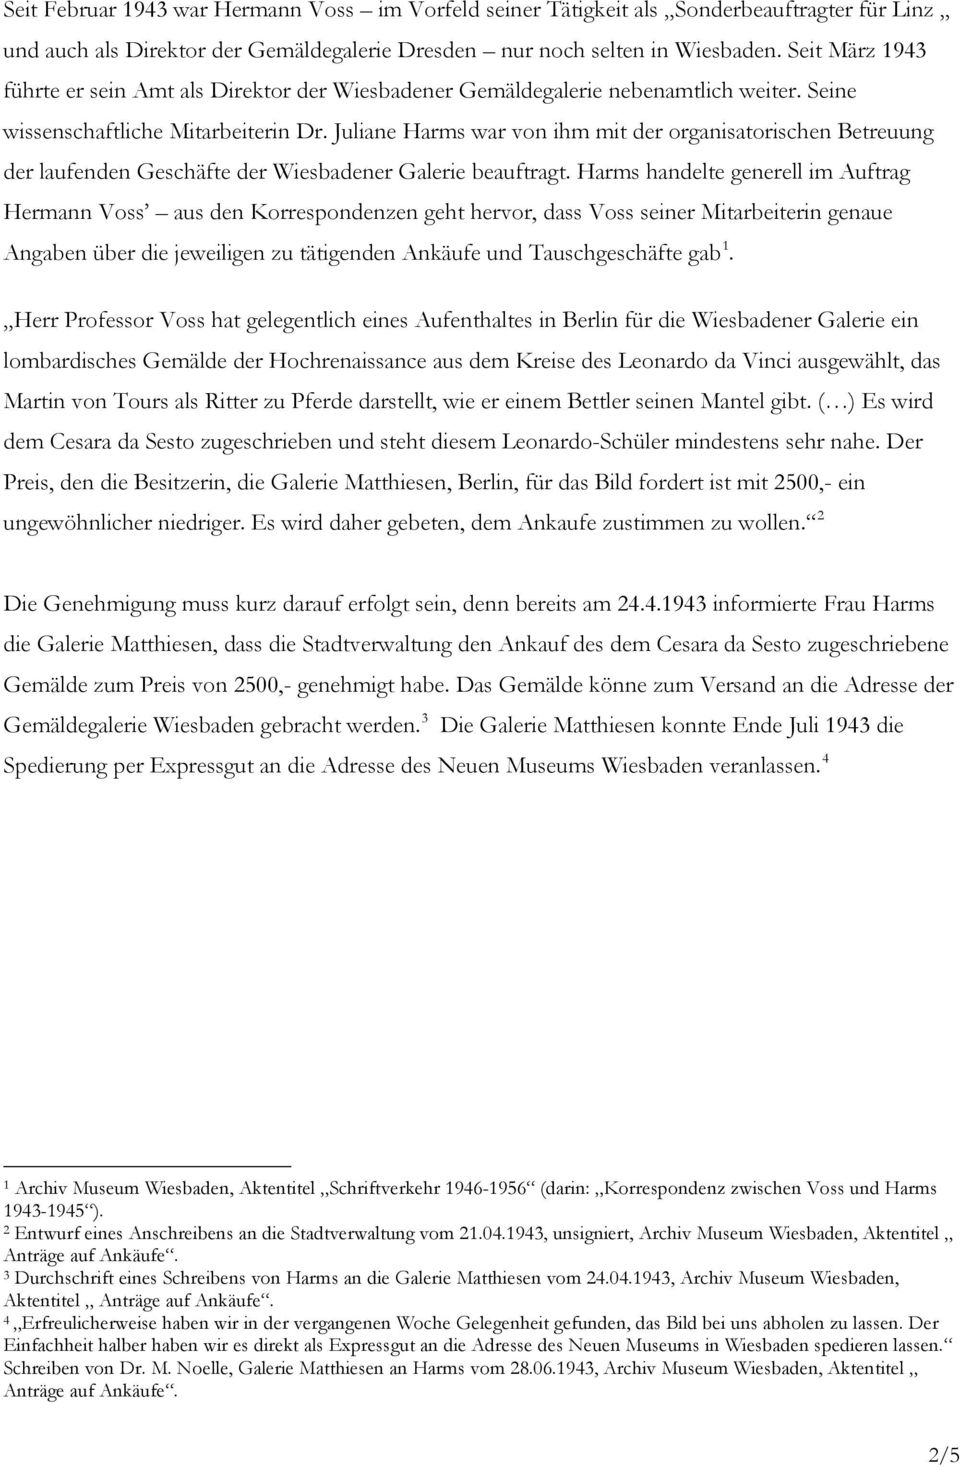 Juliane Harms war von ihm mit der organisatorischen Betreuung der laufenden Geschäfte der Wiesbadener Galerie beauftragt.